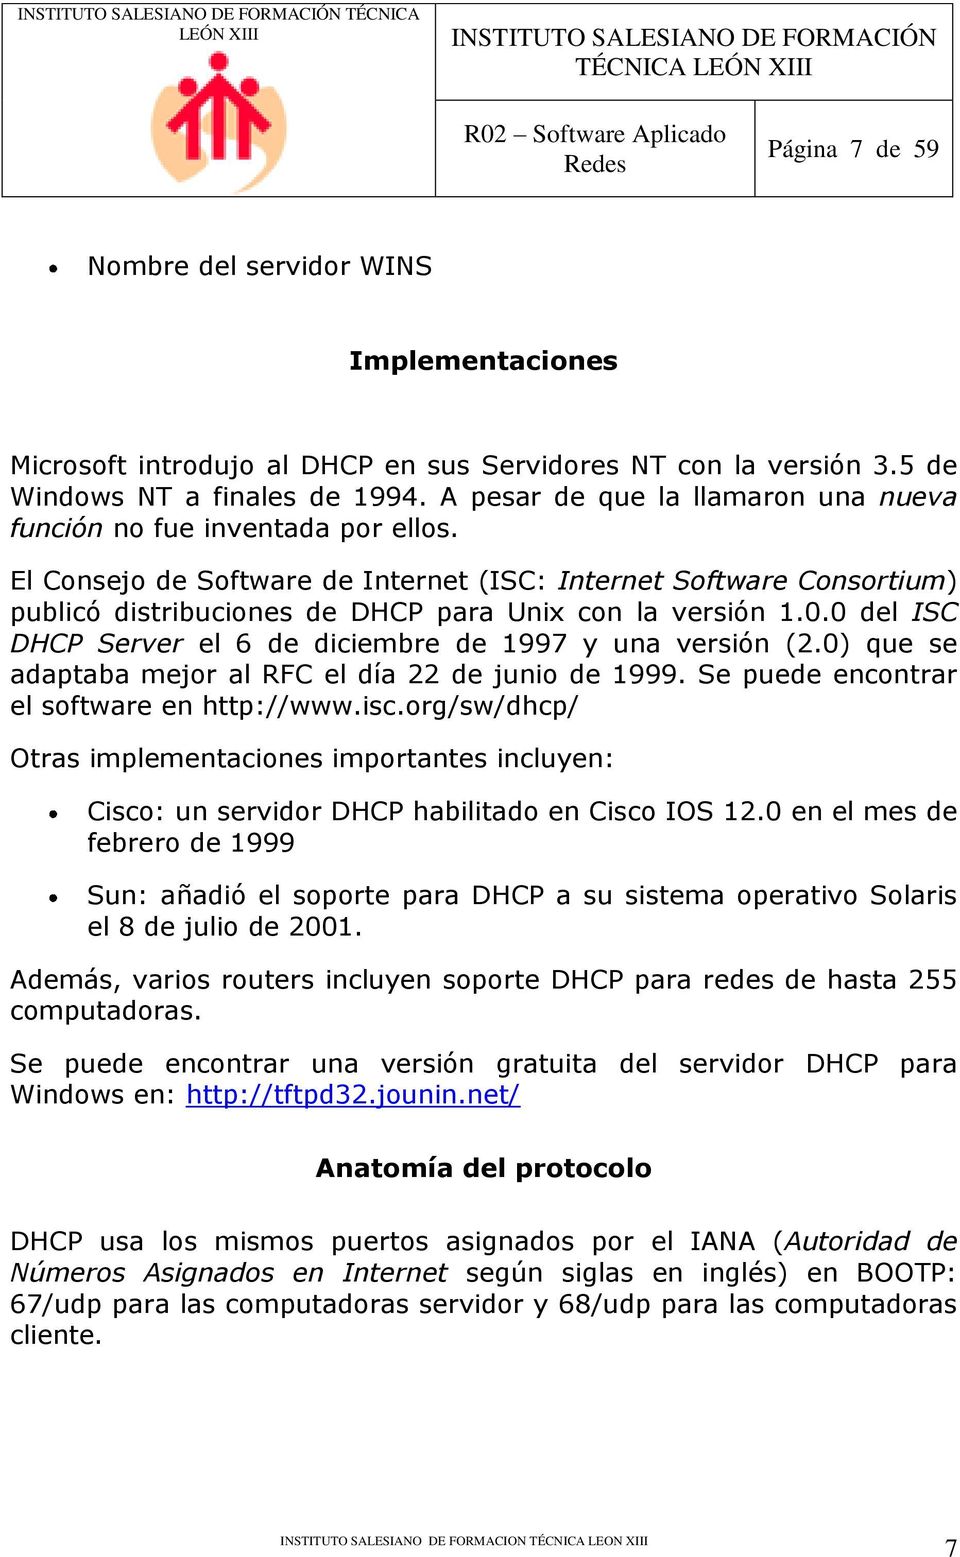 El Consejo de Software de Internet (ISC: Internet Software Consortium) publicó distribuciones de DHCP para Unix con la versión 1.0.0 del ISC DHCP Server el 6 de diciembre de 1997 y una versión (2.